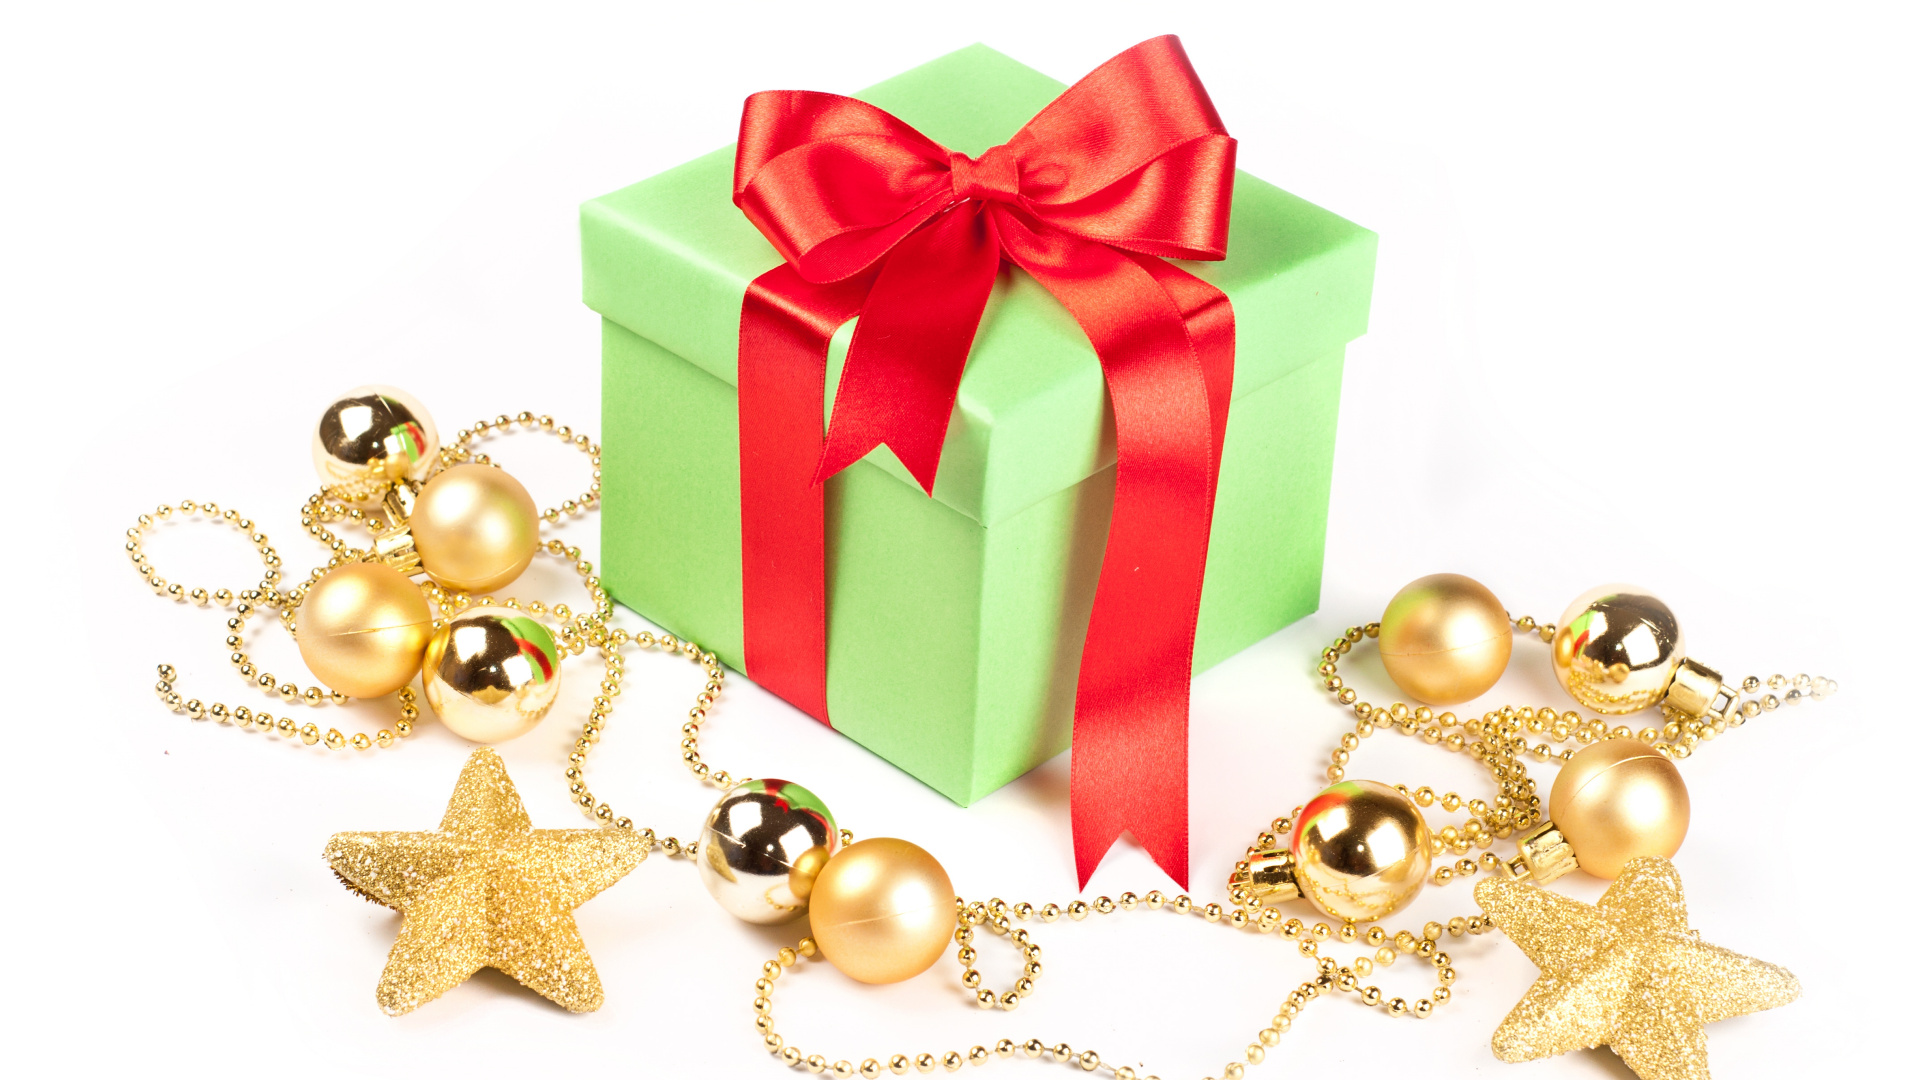 圣诞节的装饰品, 礼物, 圣诞节那天, 新的一年, 礼品包装 壁纸 1920x1080 允许